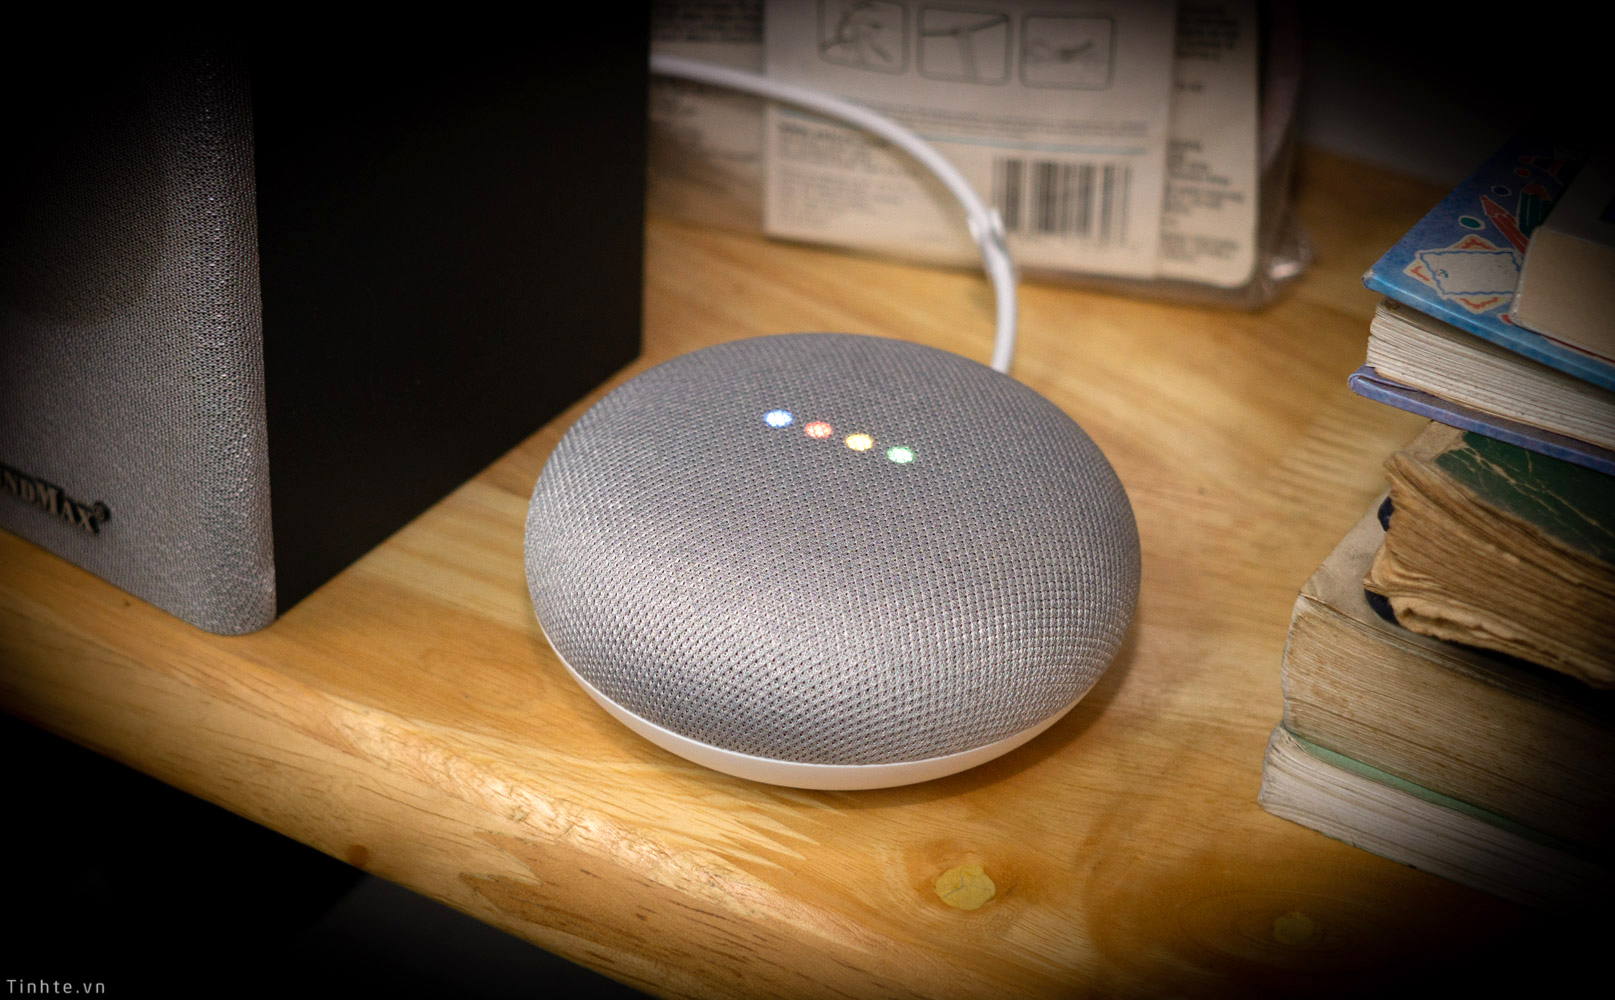 Chơi nhạc khắp cả nhà với Google Home Mini, giá chỉ từ 830k / phòng, có thể điều khiển giọng nói